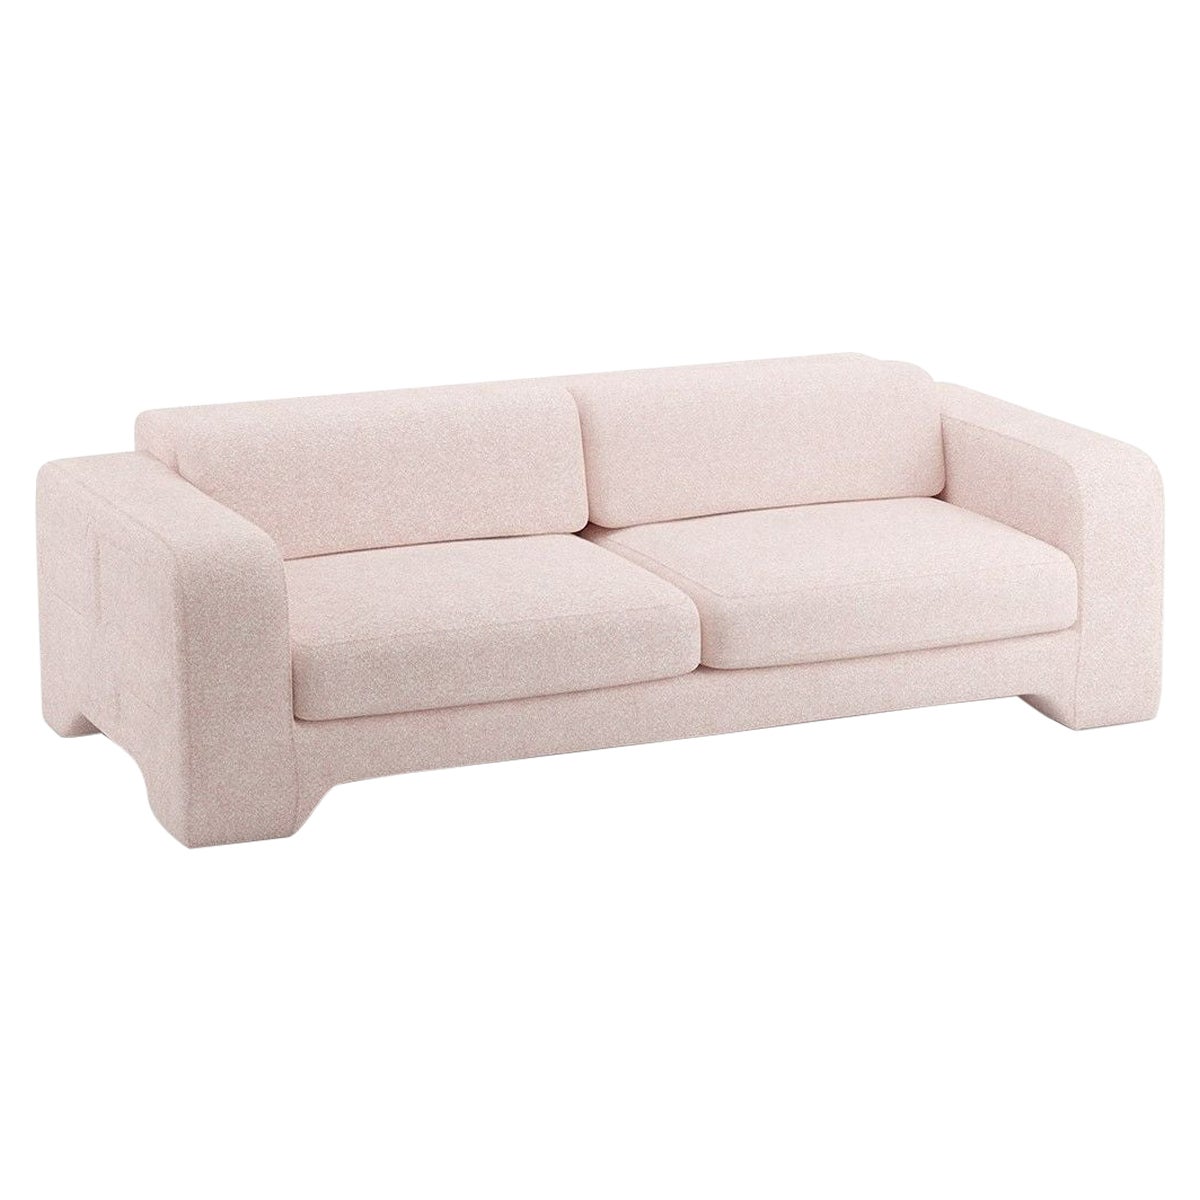 Popus Editions Giovanna 3 Seater Sofa in Powder Zanzi Linen Fabric